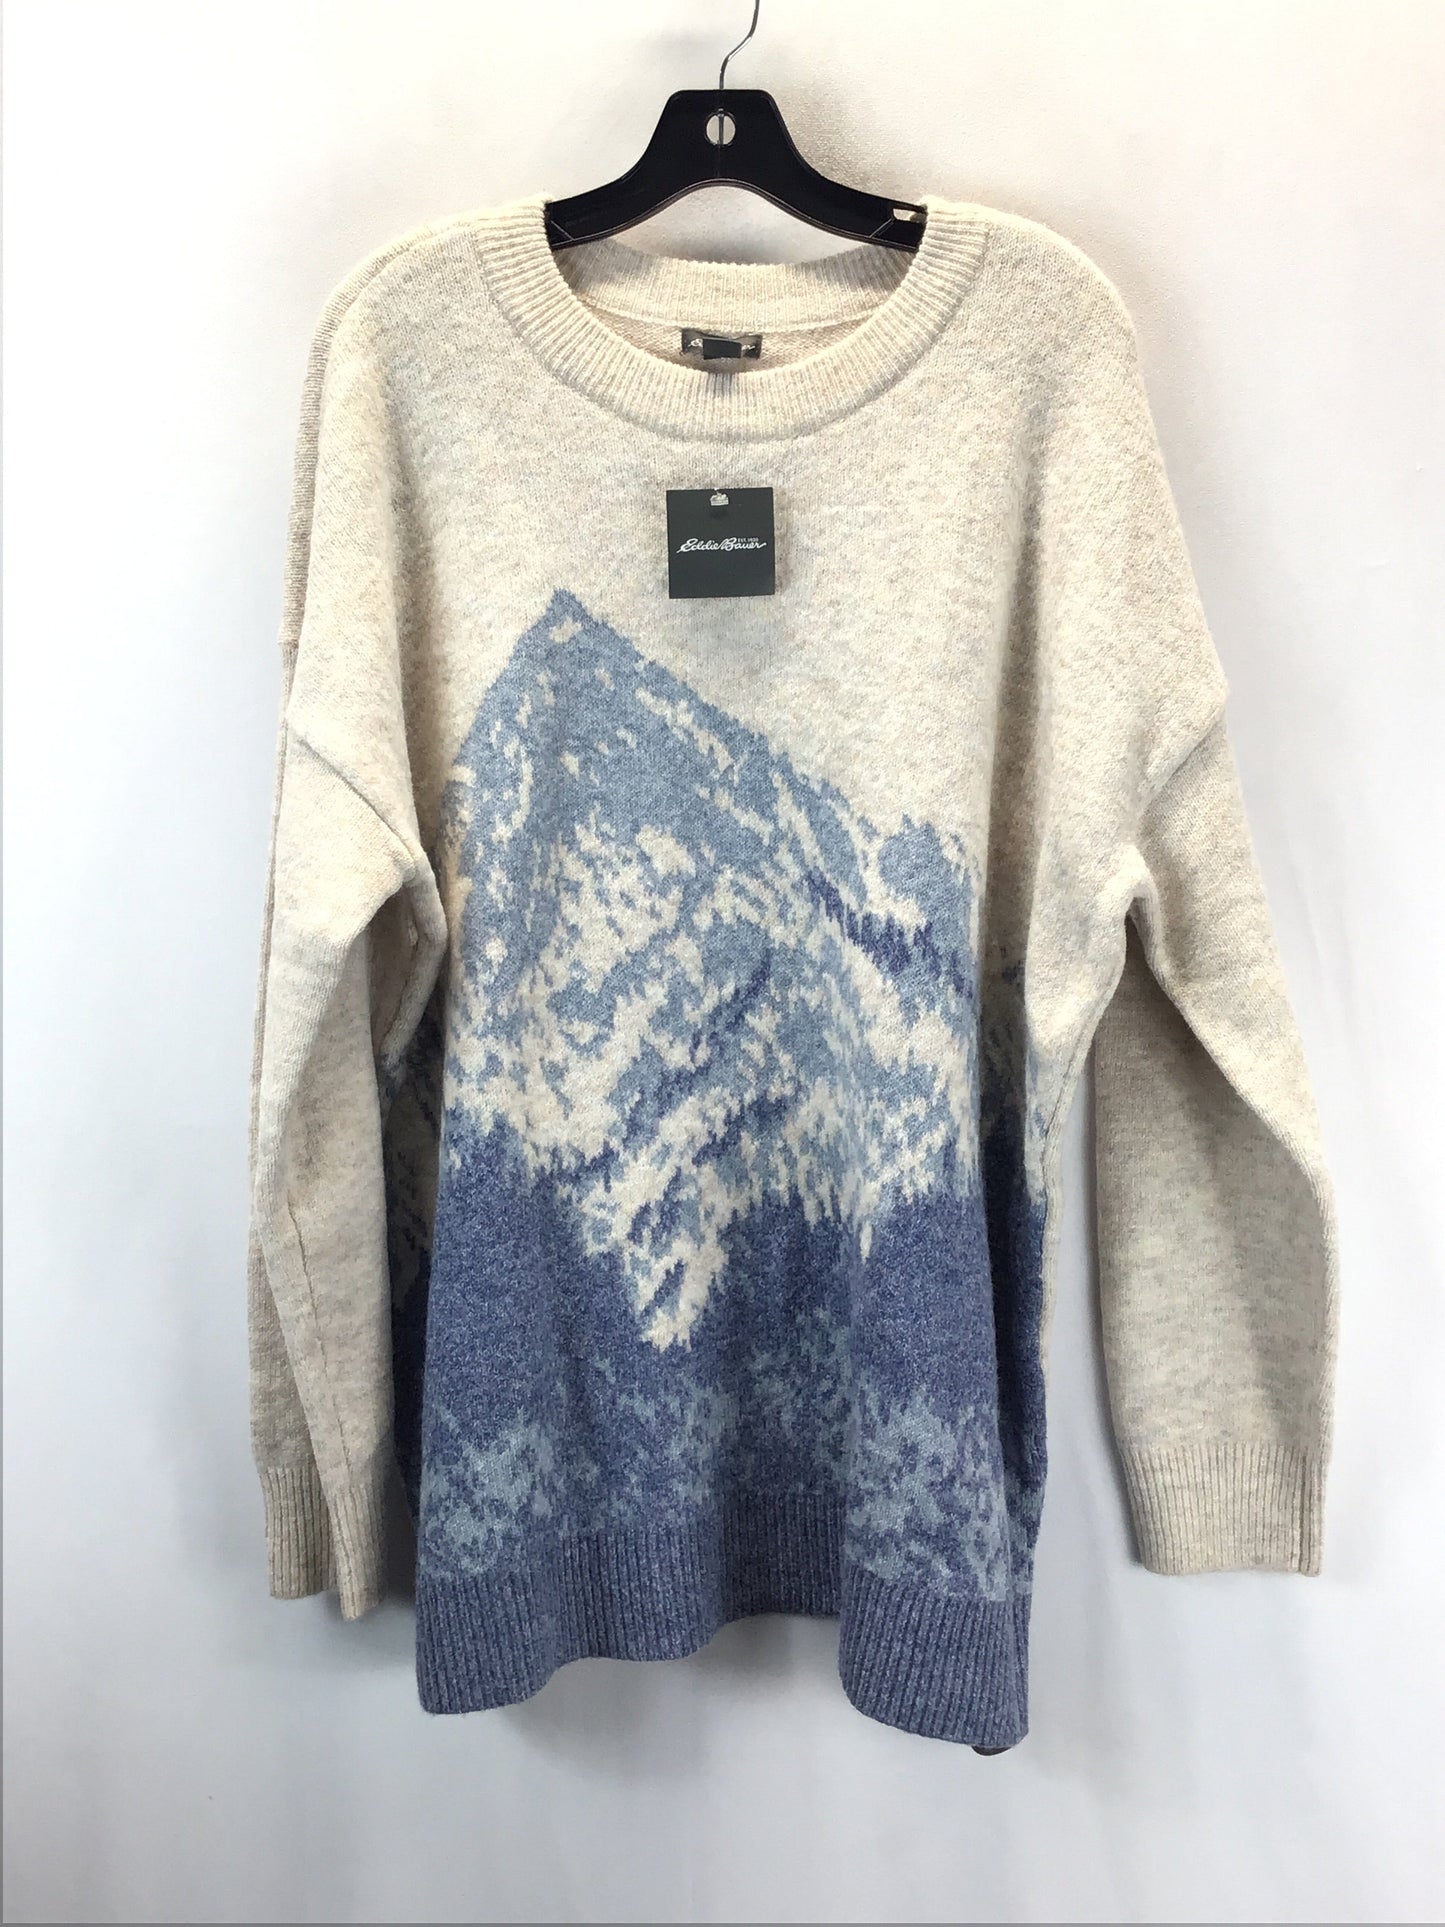 Sweater By Eddie Bauer  Size: Xl